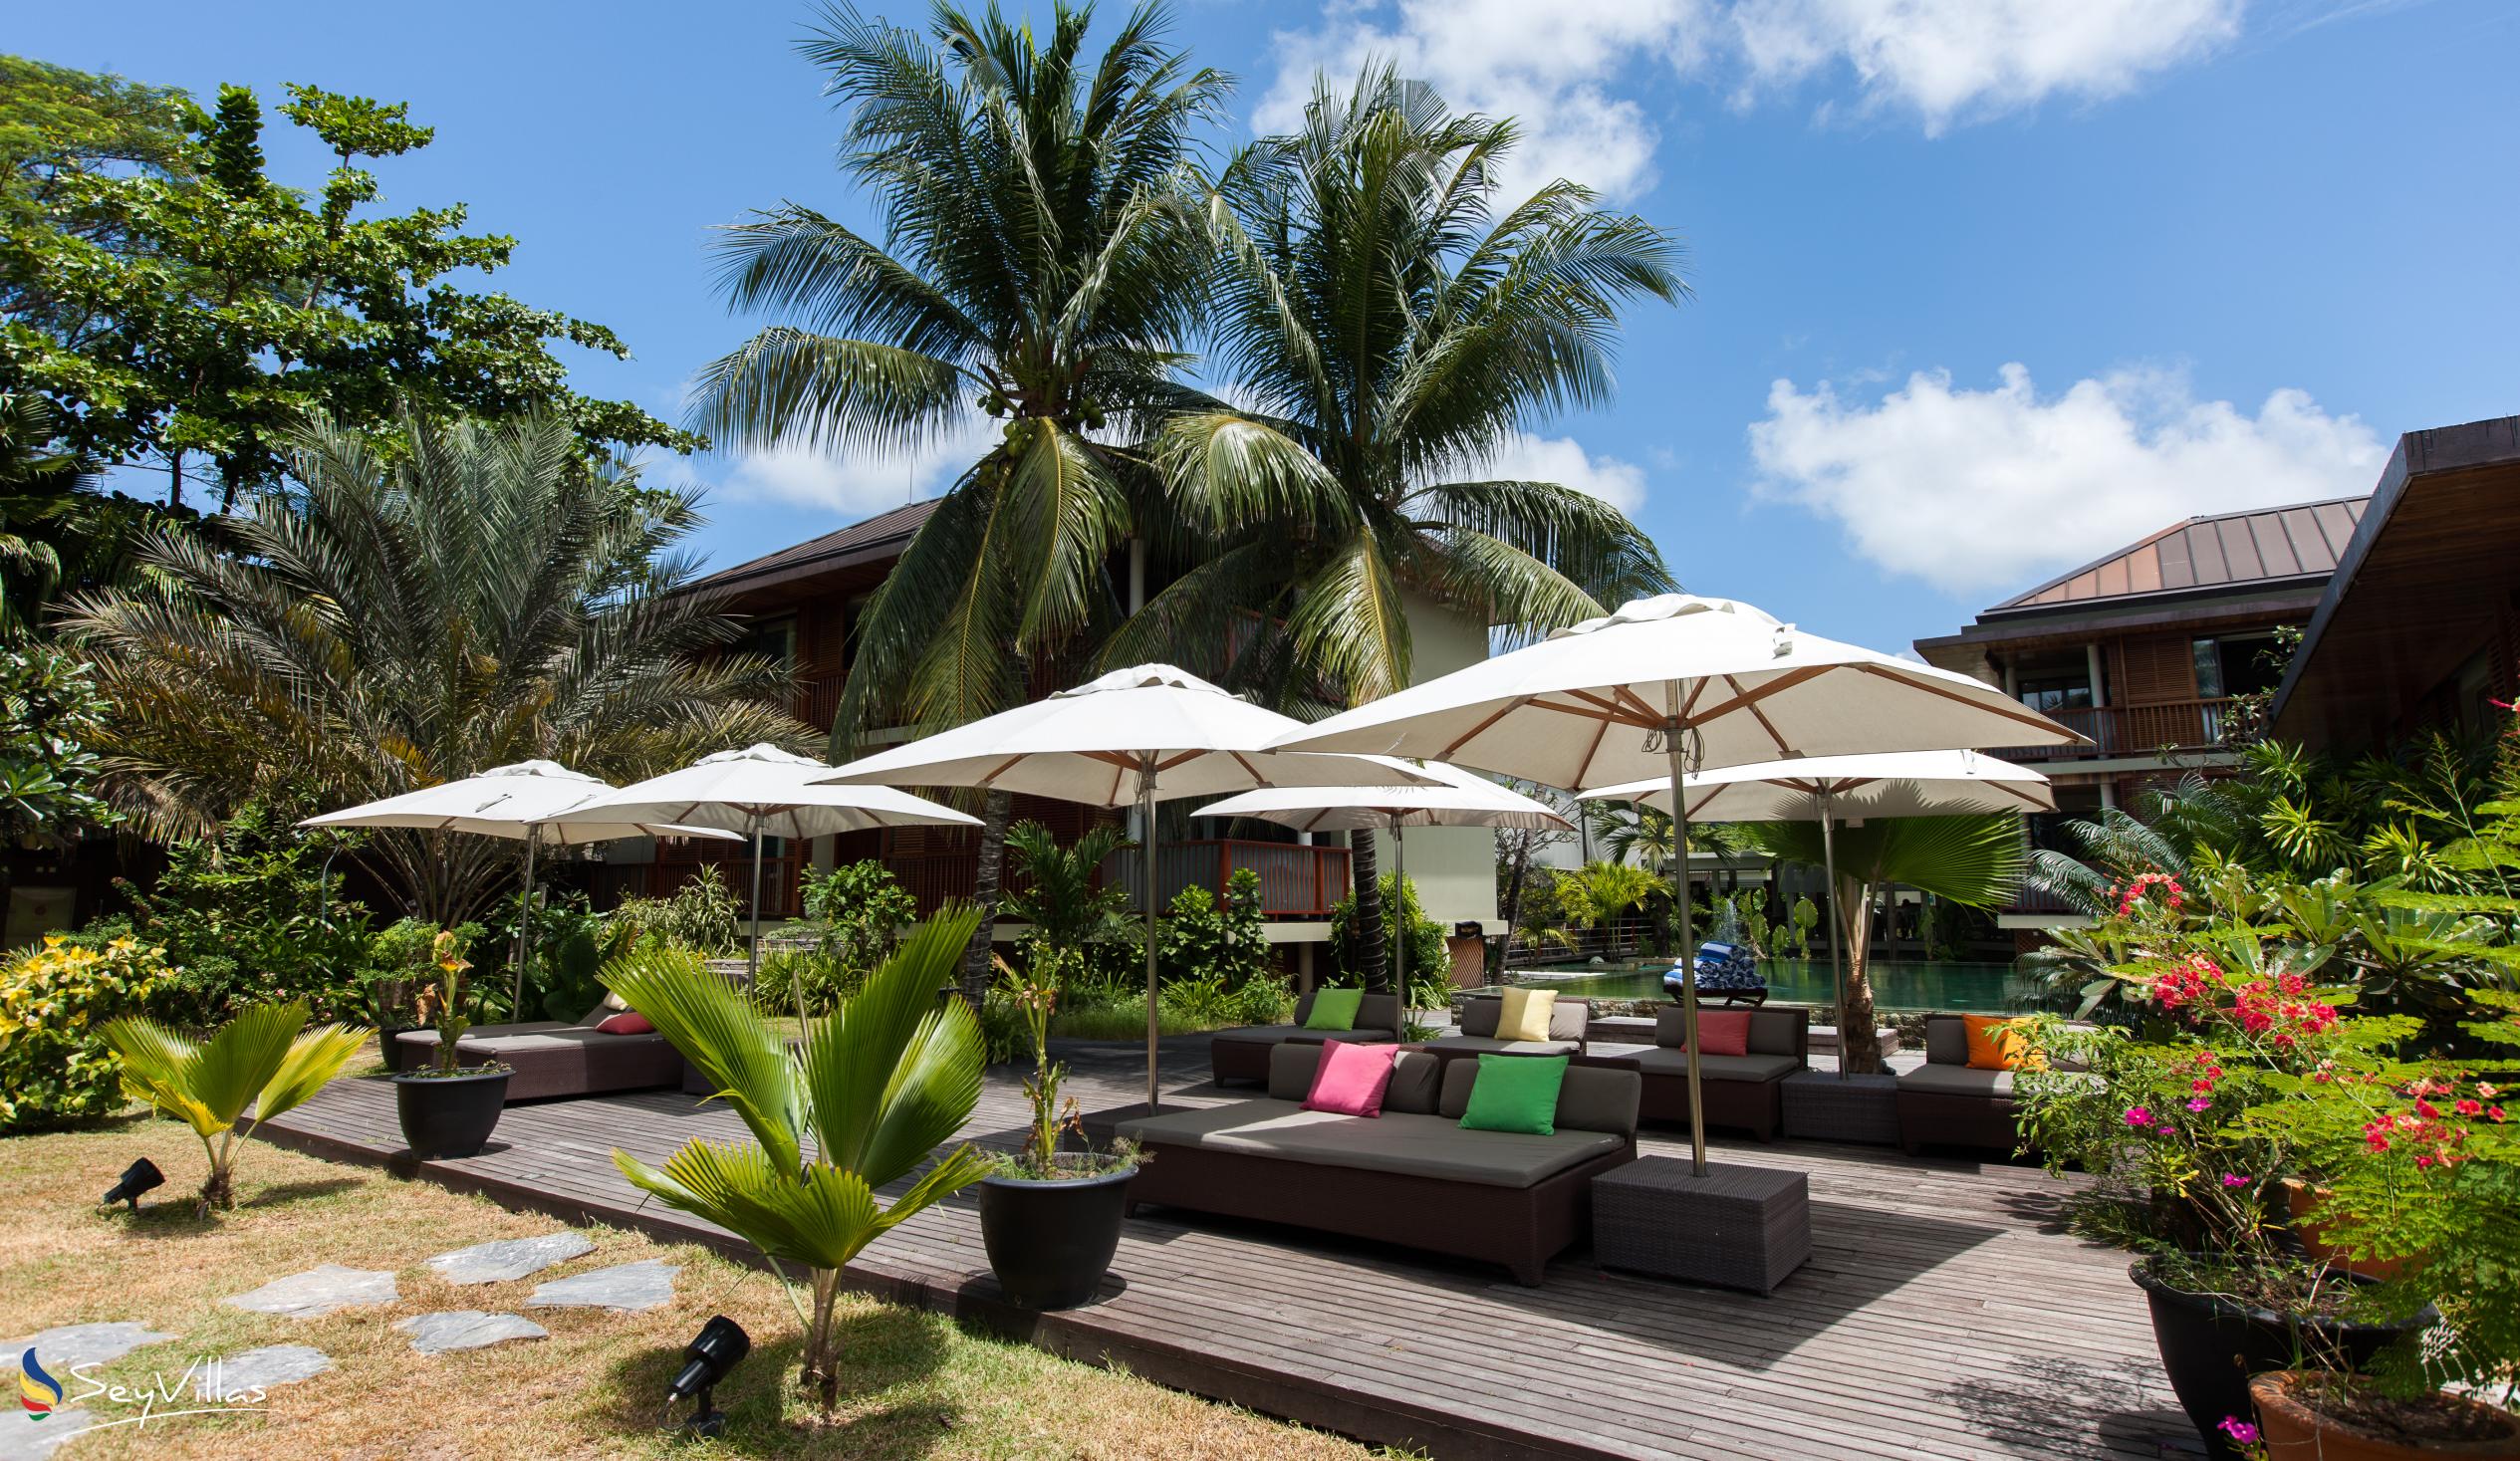 Foto 20: Dhevatara Beach Hotel - Aussenbereich - Praslin (Seychellen)